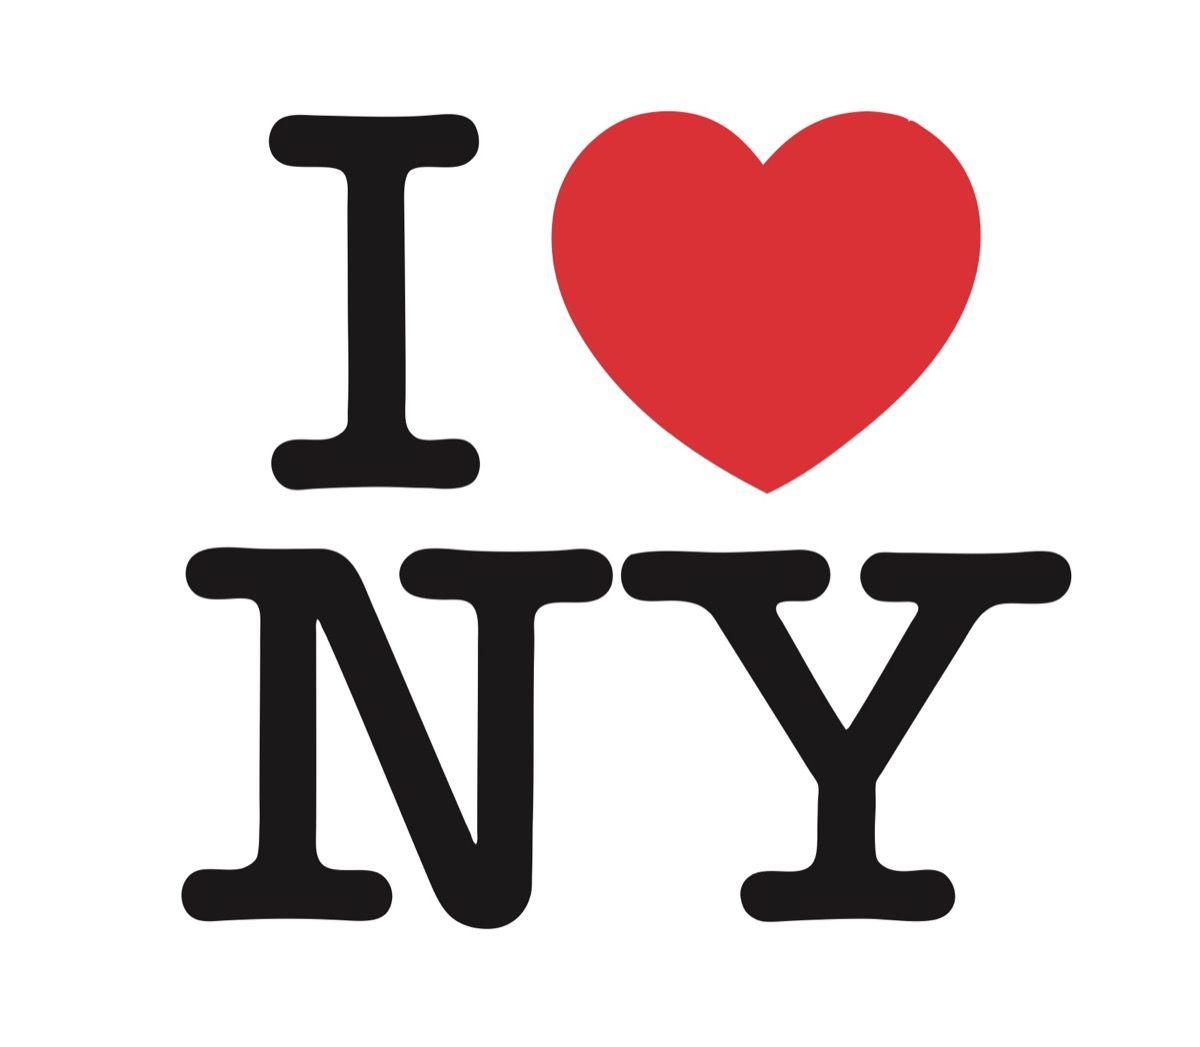 Το λογότυπο "I Love New York" είναι iconic και αξίζει εκατομμύρια...